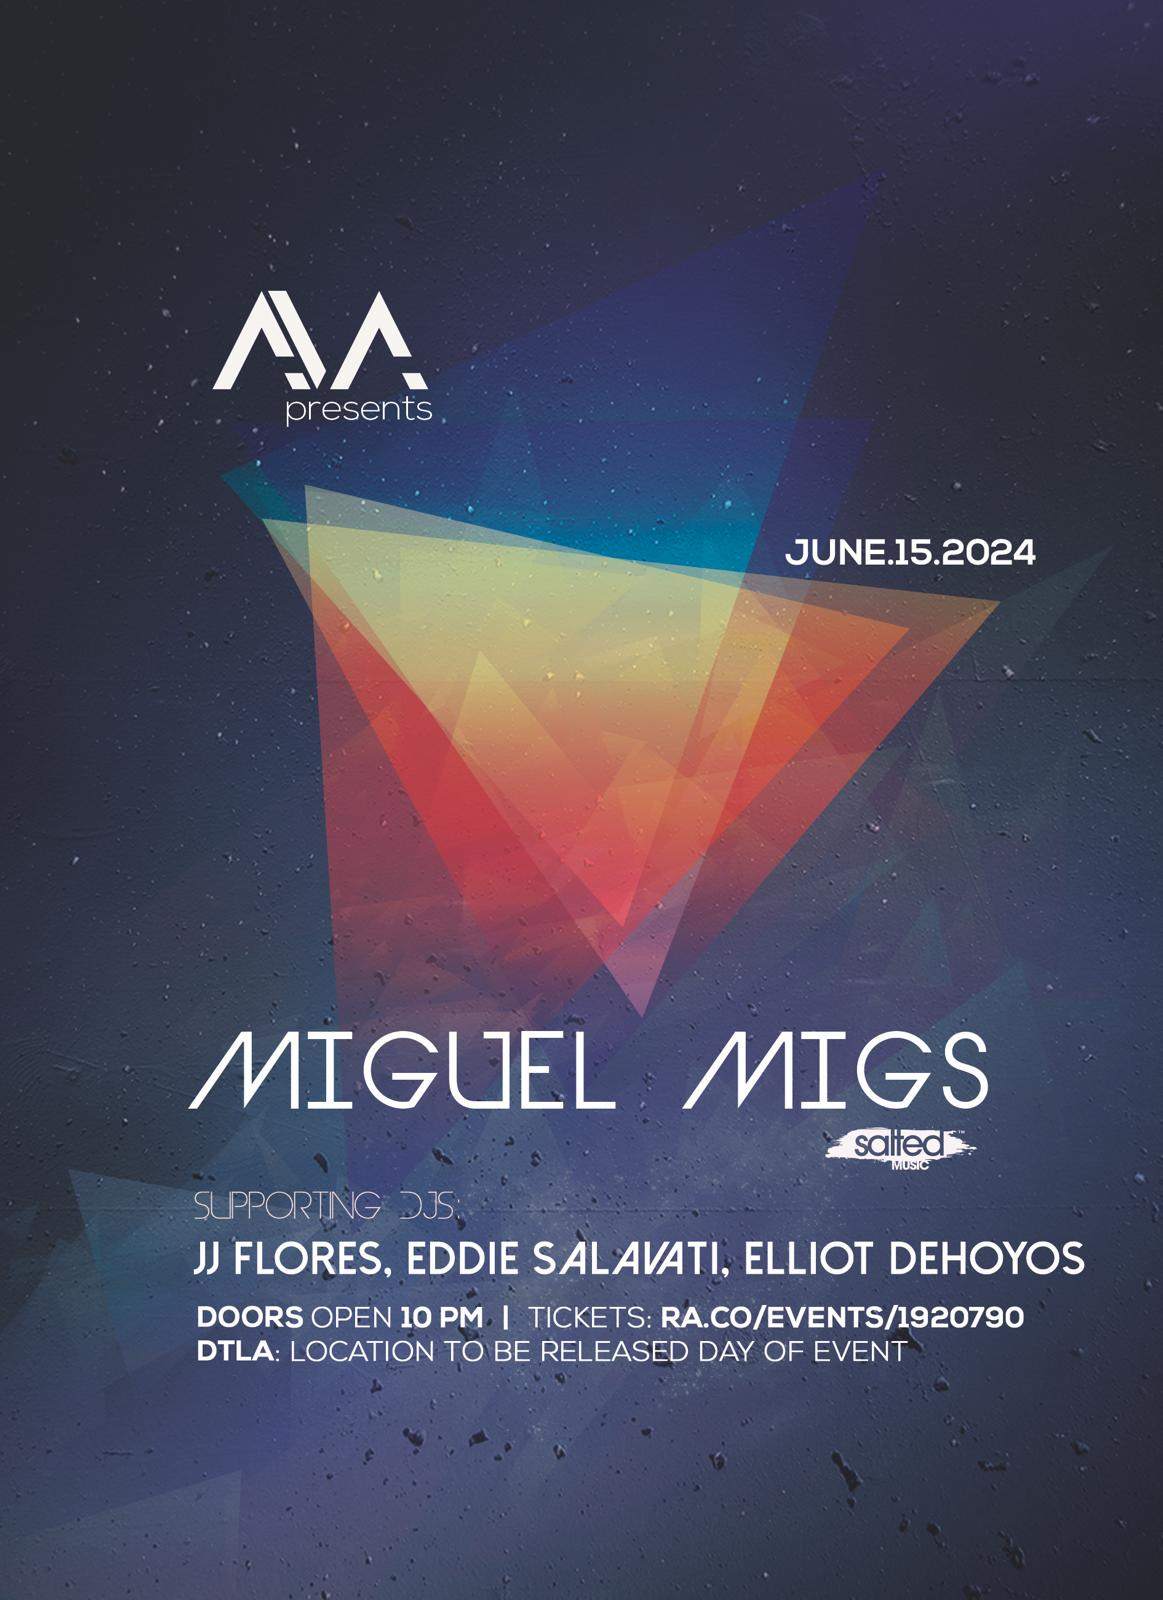 AVA presents: Miguel Migs - Página frontal